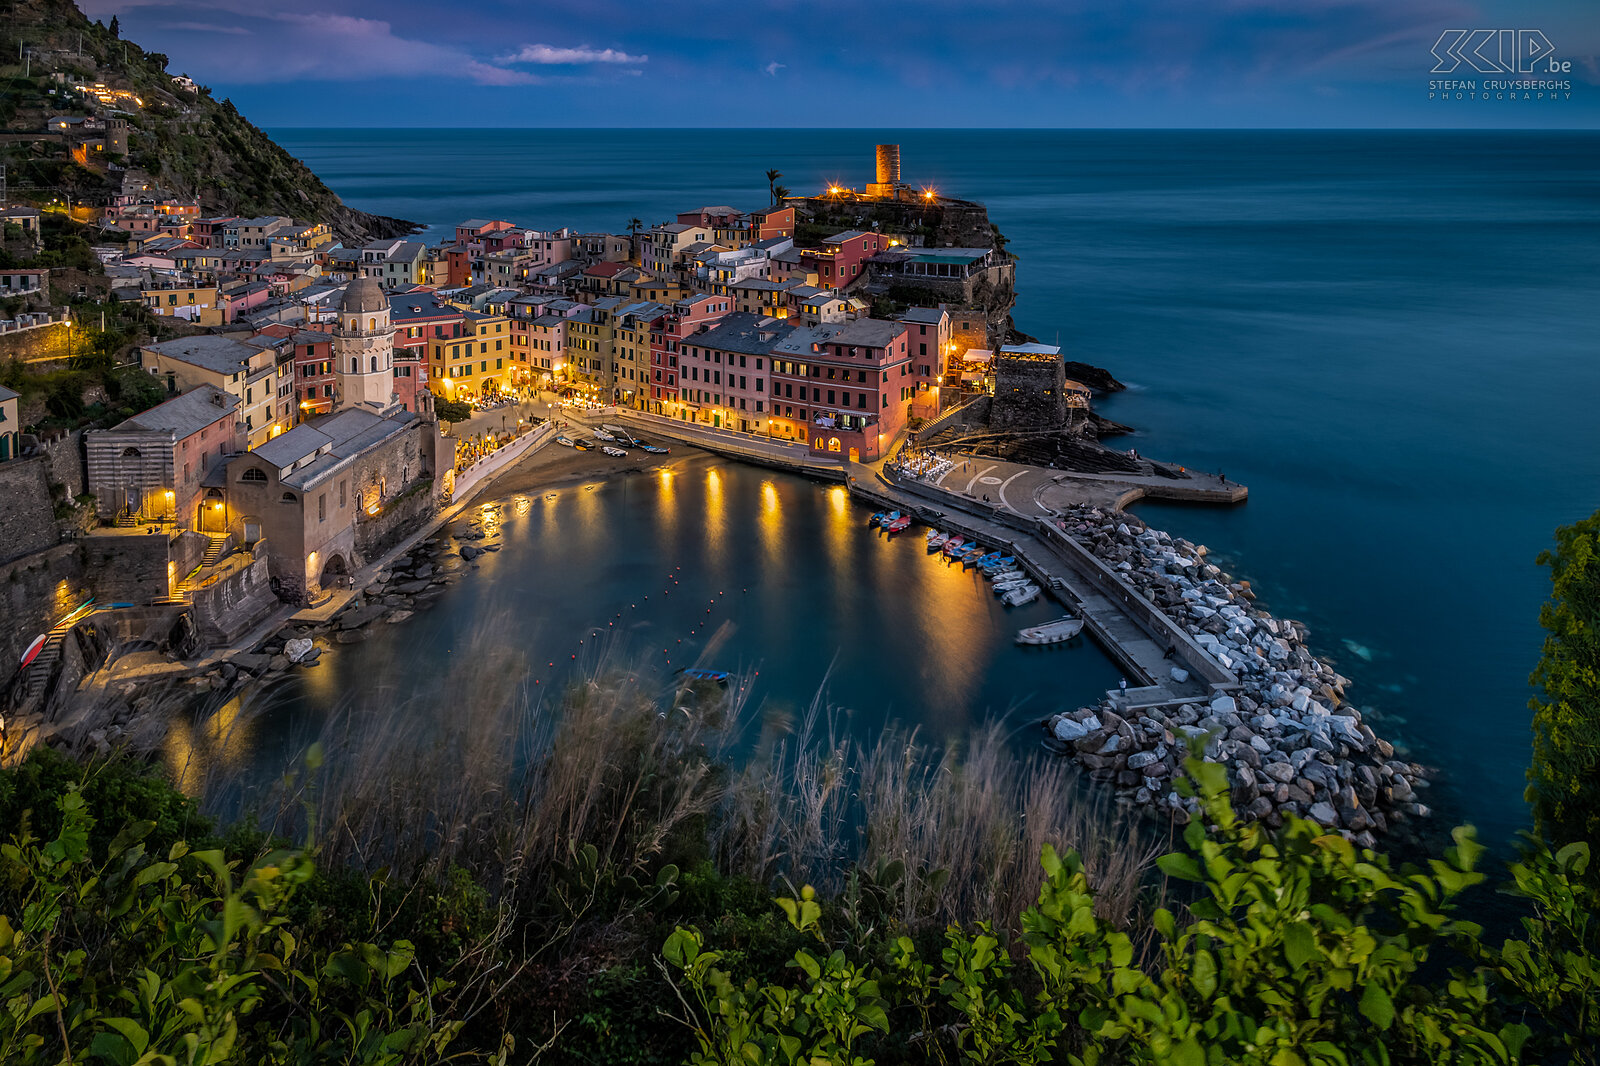 Vernazza - By night Vernazza is een van de vijf dorpen van Cinque Terre. Het heeft een bijzonder mooie haven en is zeer fotogeniek. Stefan Cruysberghs